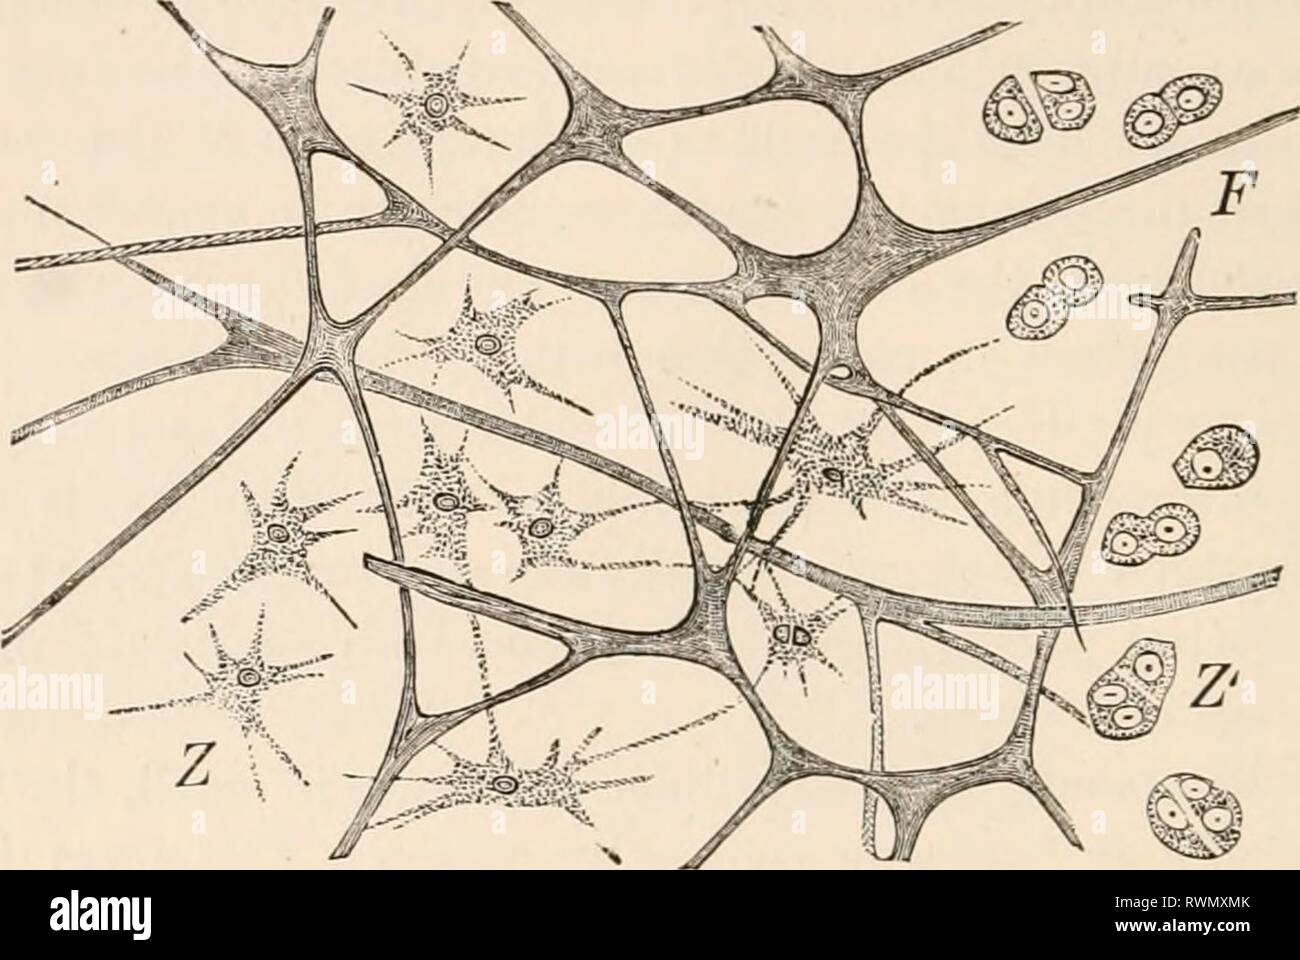 Texte-livre élémentaire de zoologie, texte élémentaire tr-livre de zoologie, tr. et éd. par Adam Sedgwick, avec l'aide de F. G. Heathcote elementarytextbo01clau Année : 1892-1893 GEXEHAL. PABT phora). Ce qu'on appelle le tissu de jeunes Ctenophora sécrétées, et le gelatinoxis Medusse de tissus et de larves d'Échinodermes, dans lequel les cellules éventuellement migrer, être au premier absent, a une relation semblable (fig. 26). FIG. 26.-tissu gélatineux de Rhizostoma. F, réseau fibreux ; Z, les cellules avec des procédés ; Z', le même dans la division. Tissu conjonctif réticulaire est constitué d'un réseau de branches et en forme d'étoile Banque D'Images